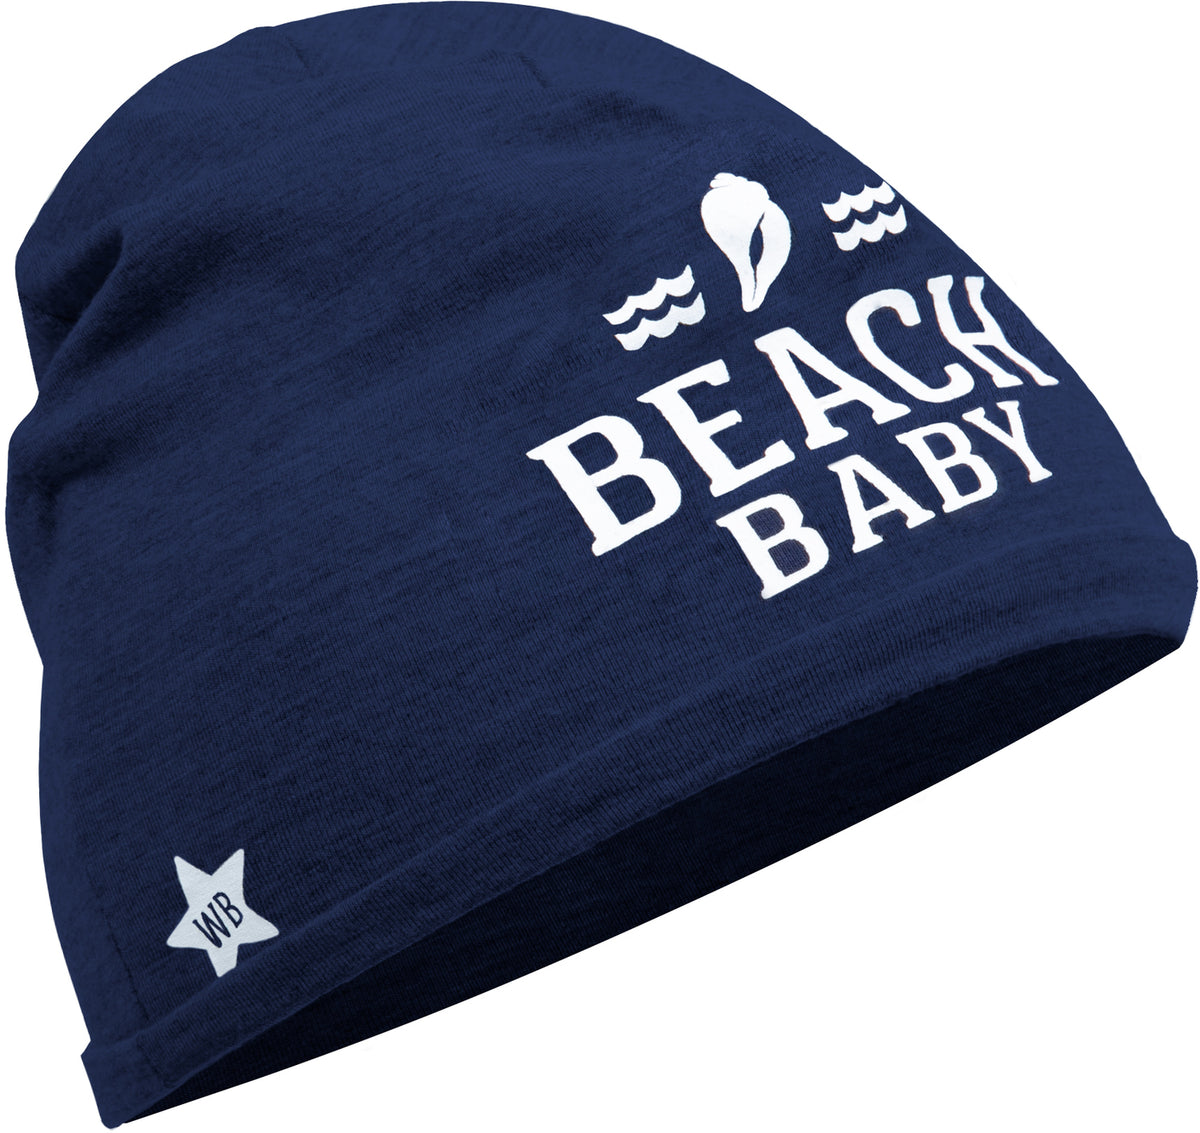 Beach - Navy Beanie (0-12 Months) – WaskaVillage